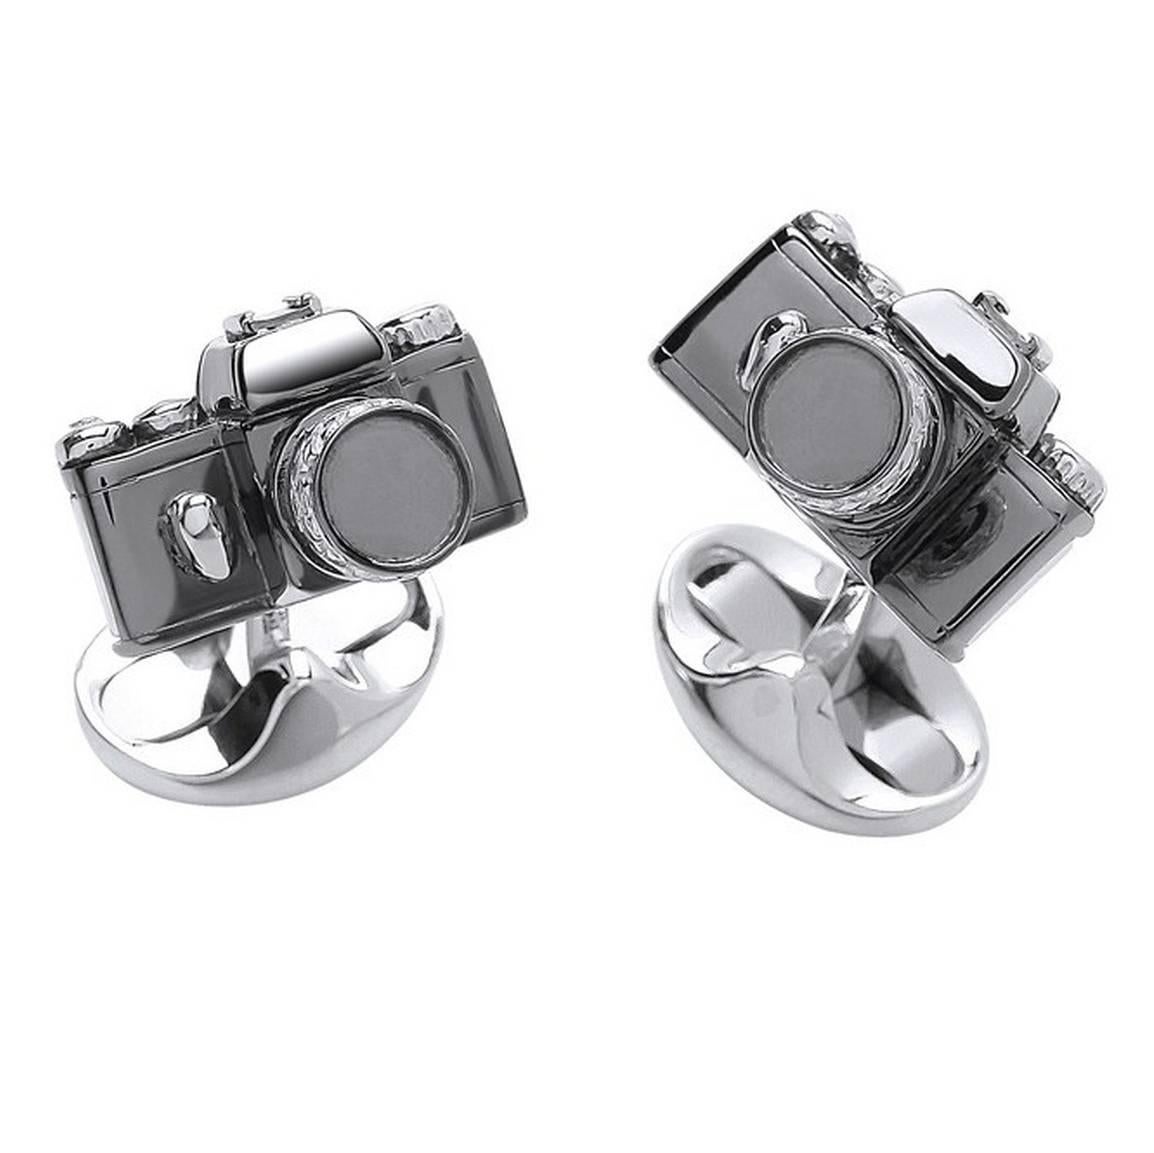 Deakin & Francis Sterling Silver Camera Cufflinks